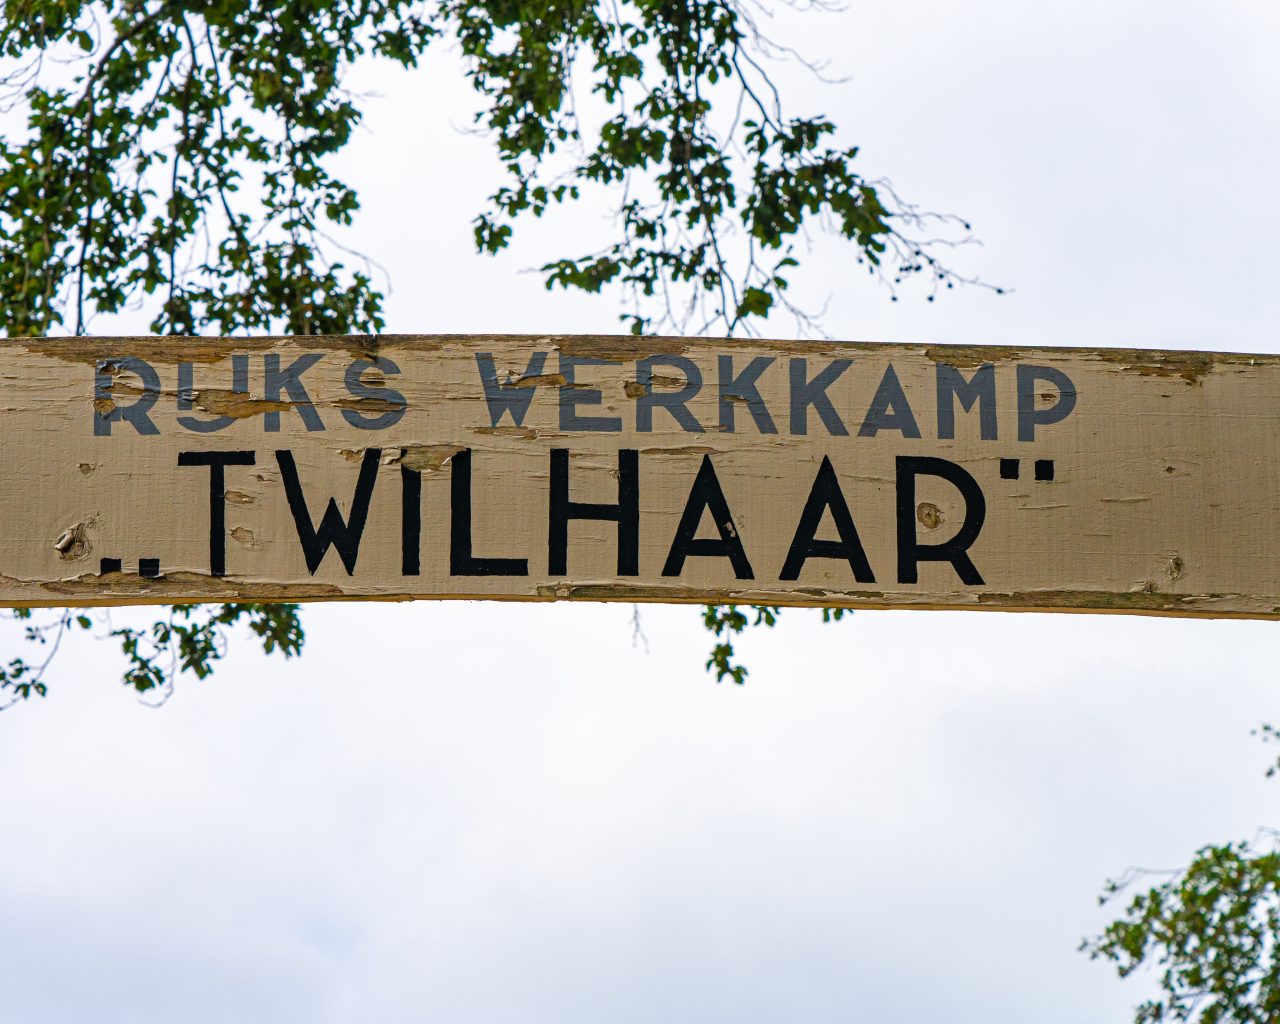 Rijks-werkkamp-Twilhaar-tijdens-Pieterpad-etappe-11